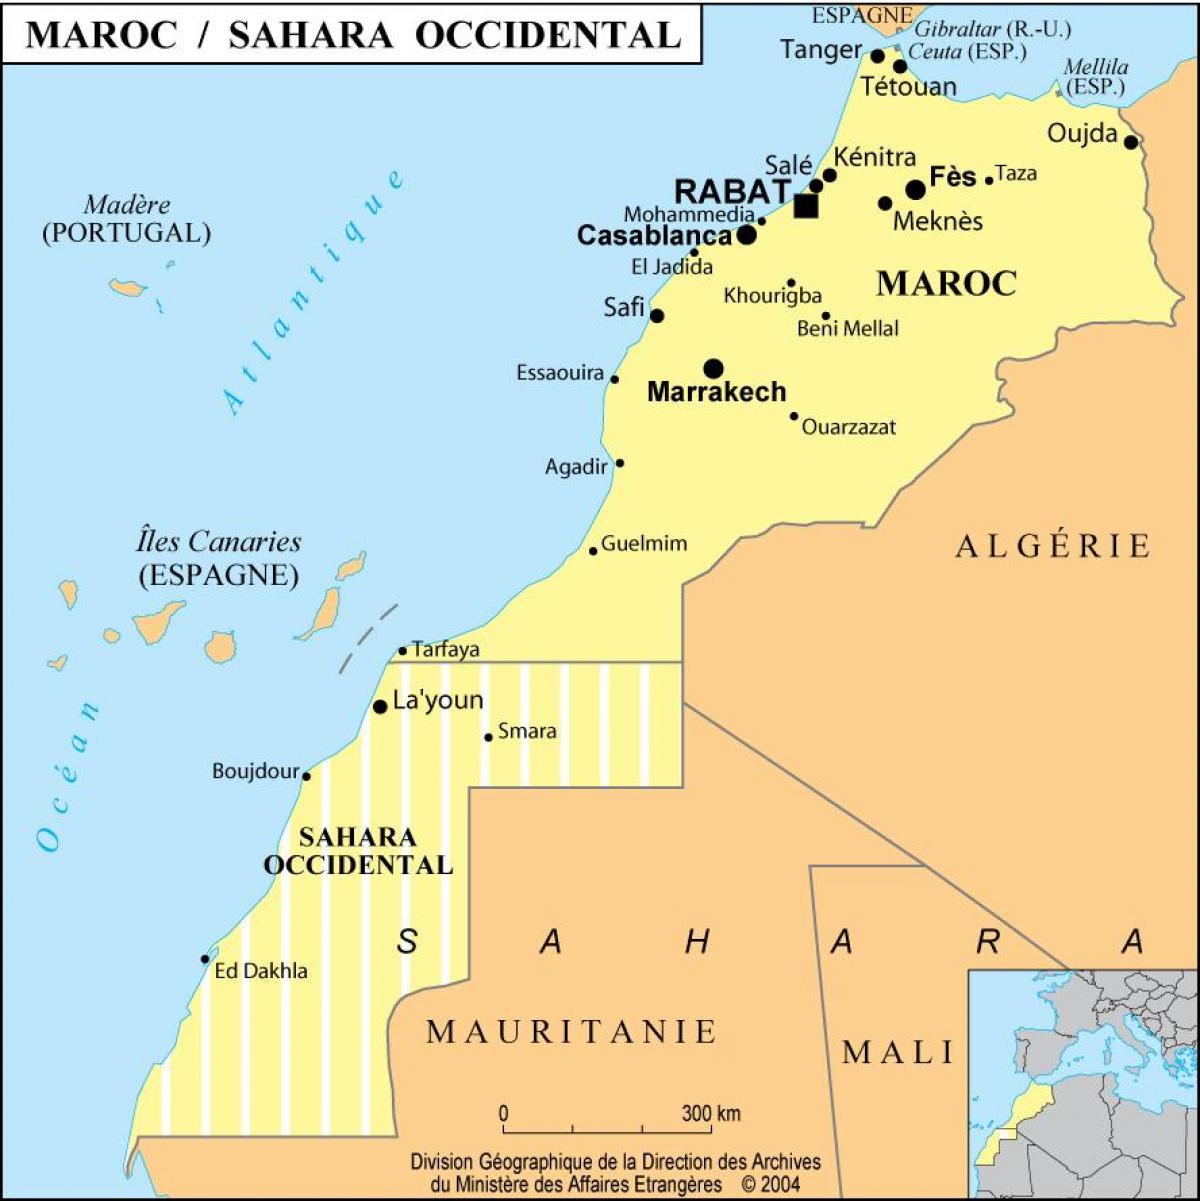 Mapa de Marruecos con las principales ciudades